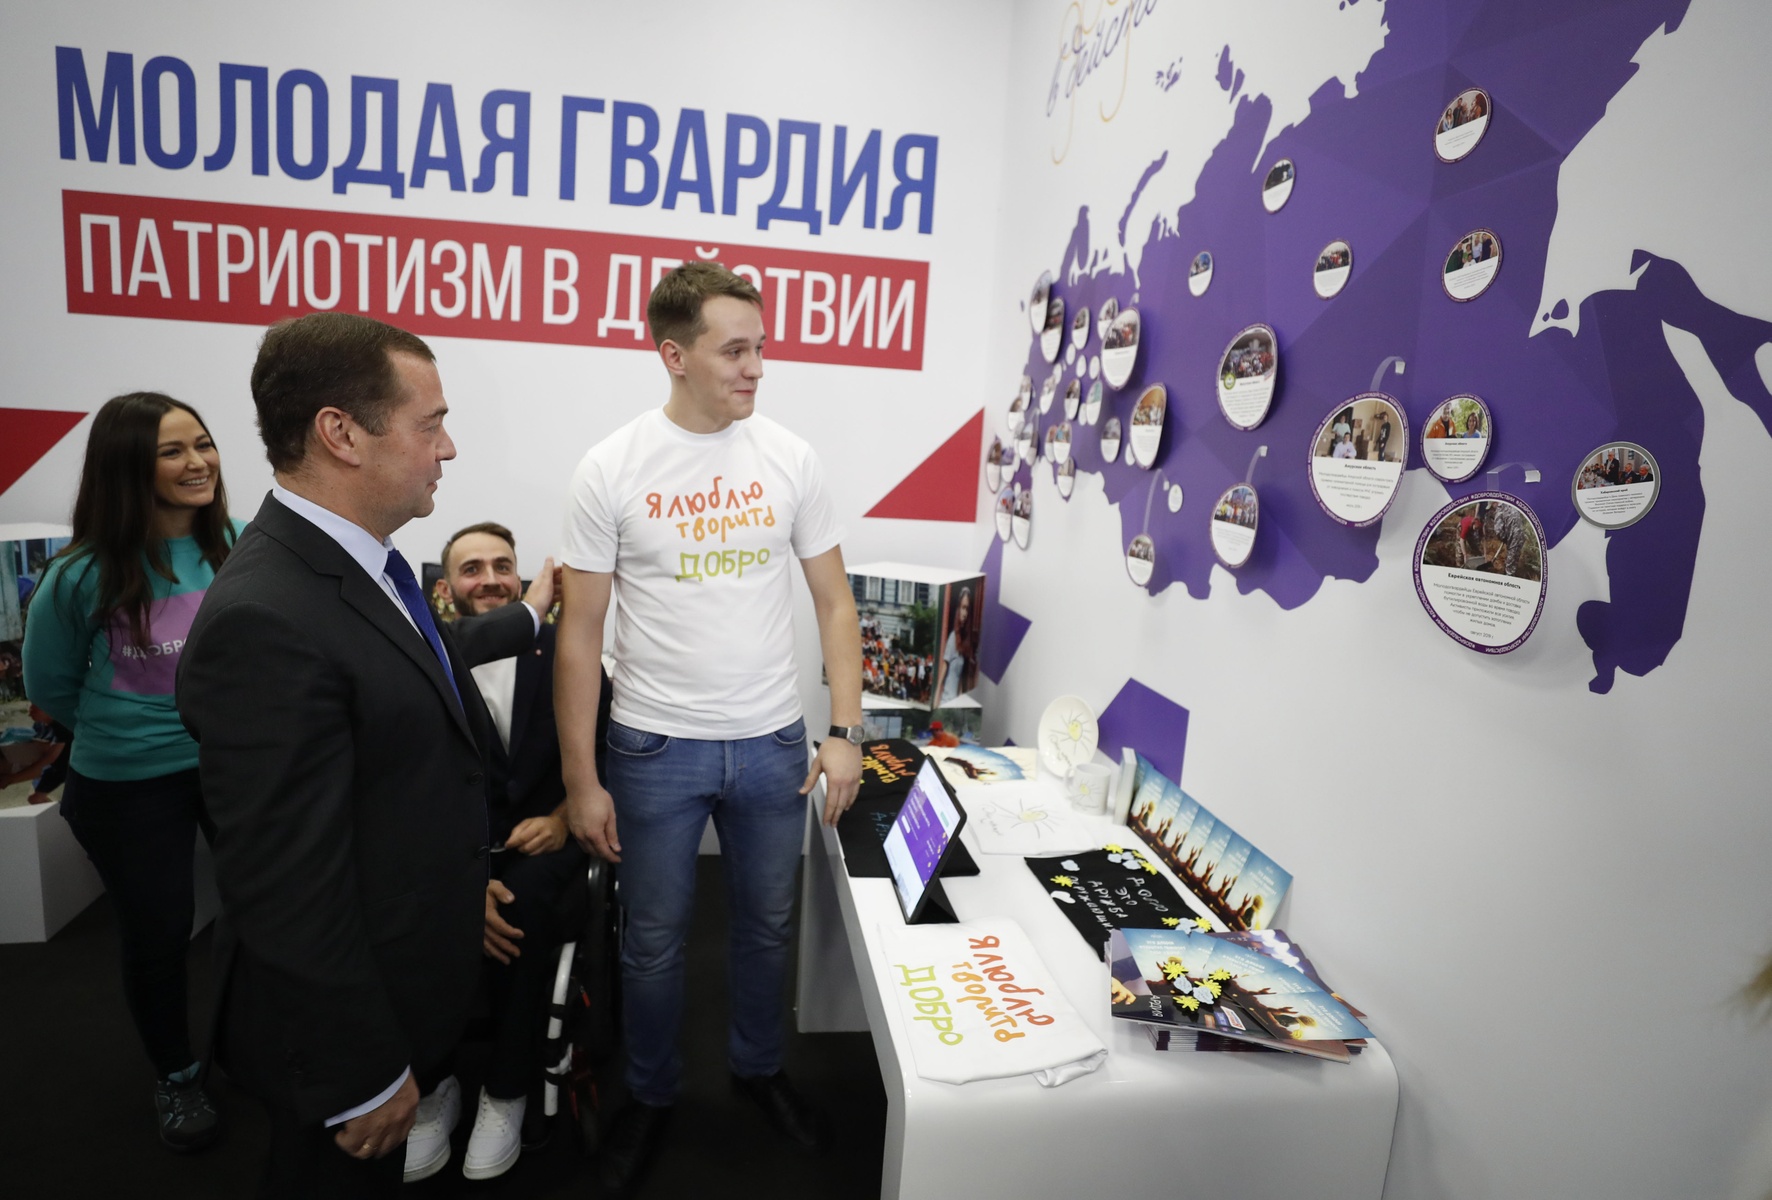  Дмитрий Медведев встретился с активистами «Молодой Гвардии Единой России». Фото: Дмитрий Астахов/POOL/ТАСС